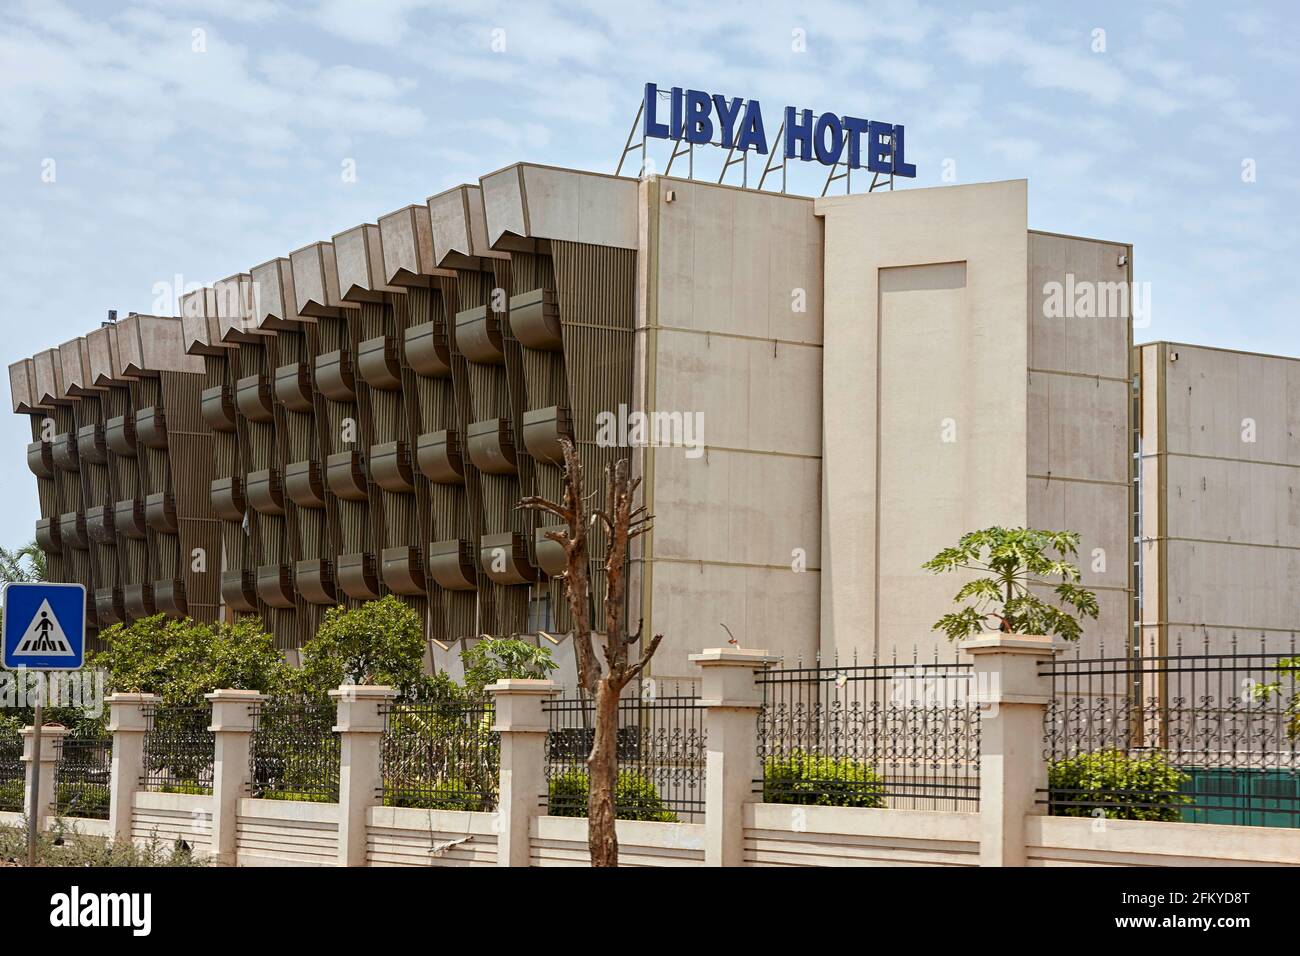 Libya Hotel in Bissau Guinea-Bissau Africa Stock Photo